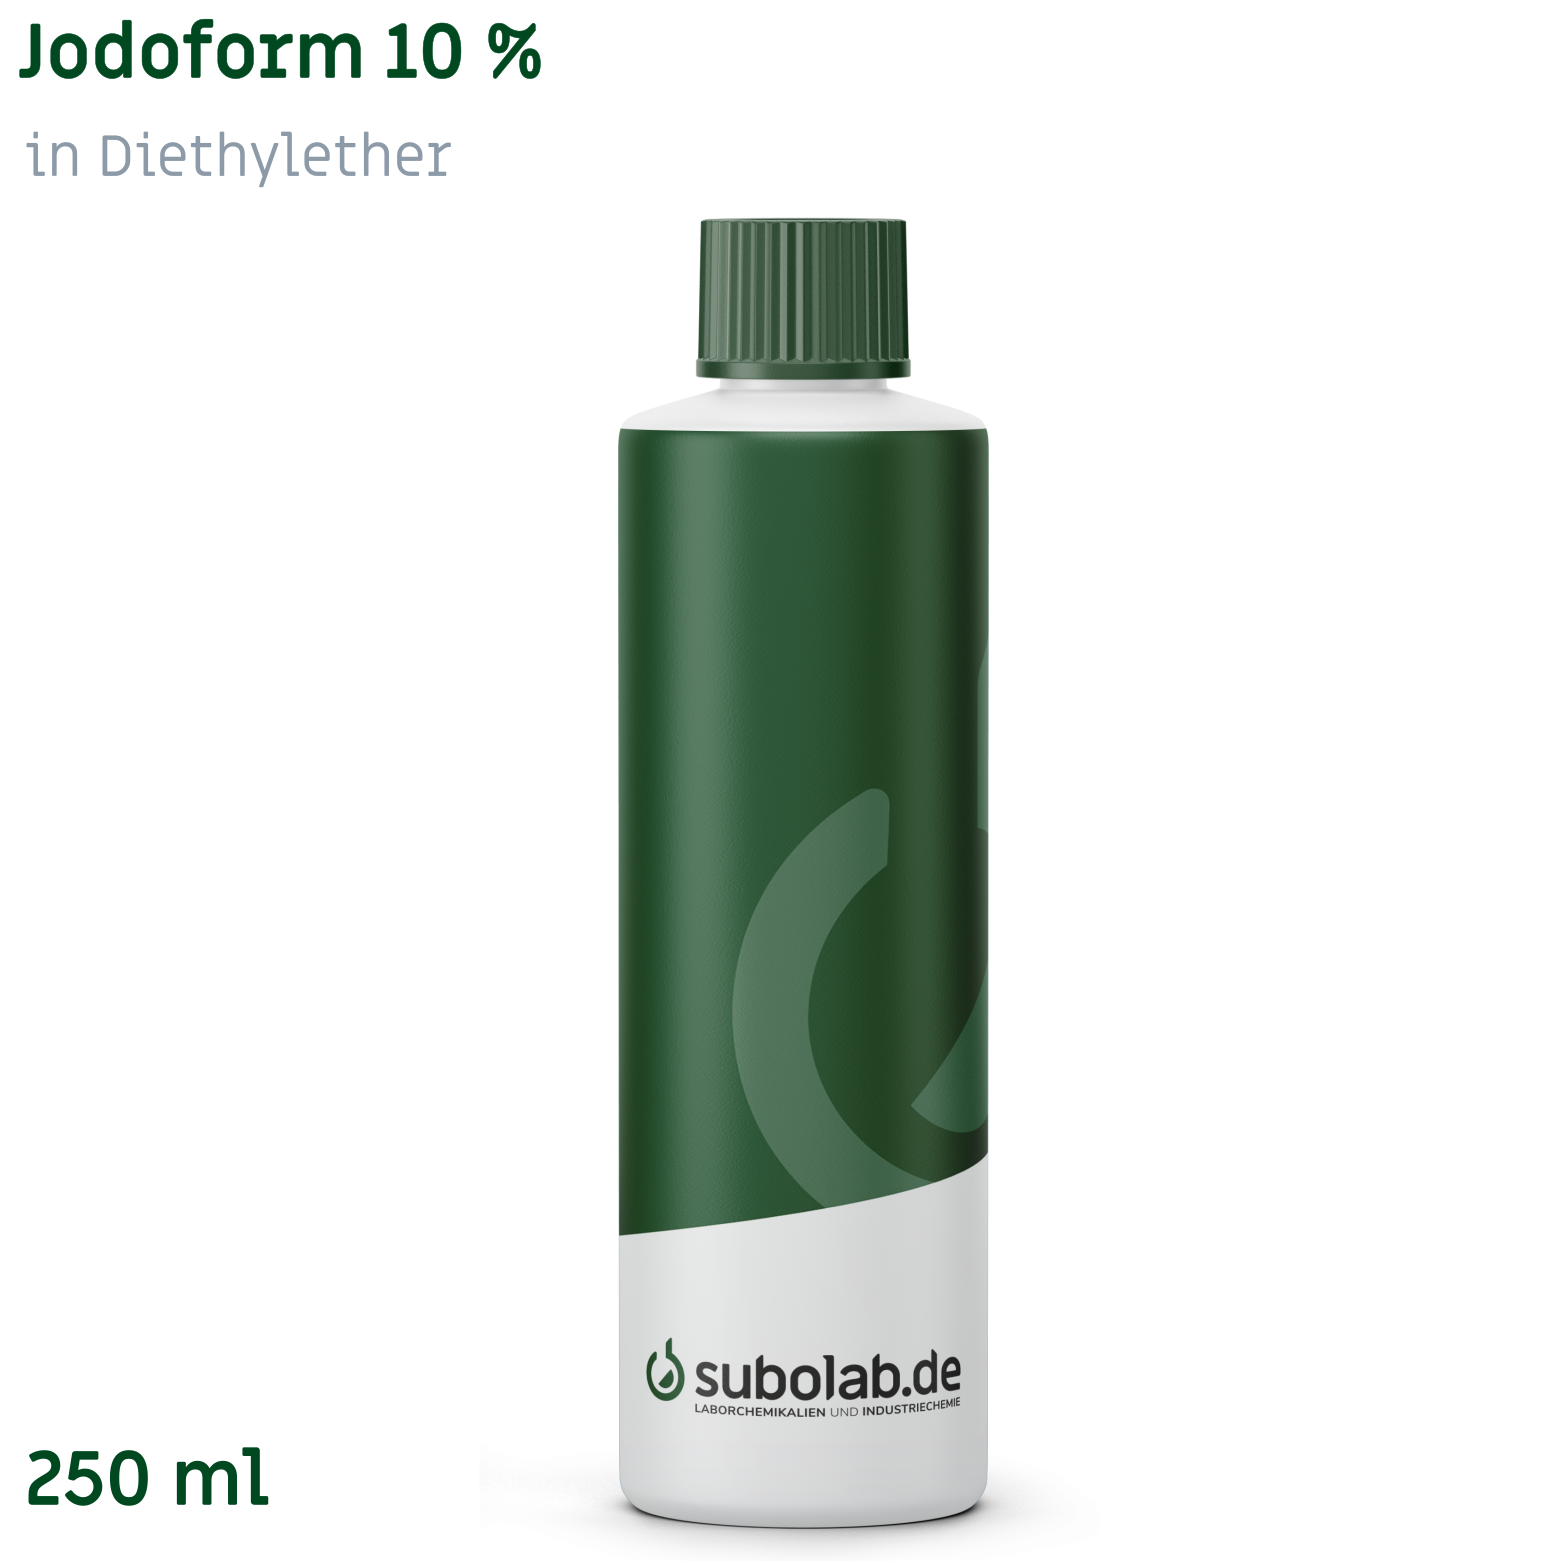 Bild von Jodoform 10 % in Diethylether (250 ml)